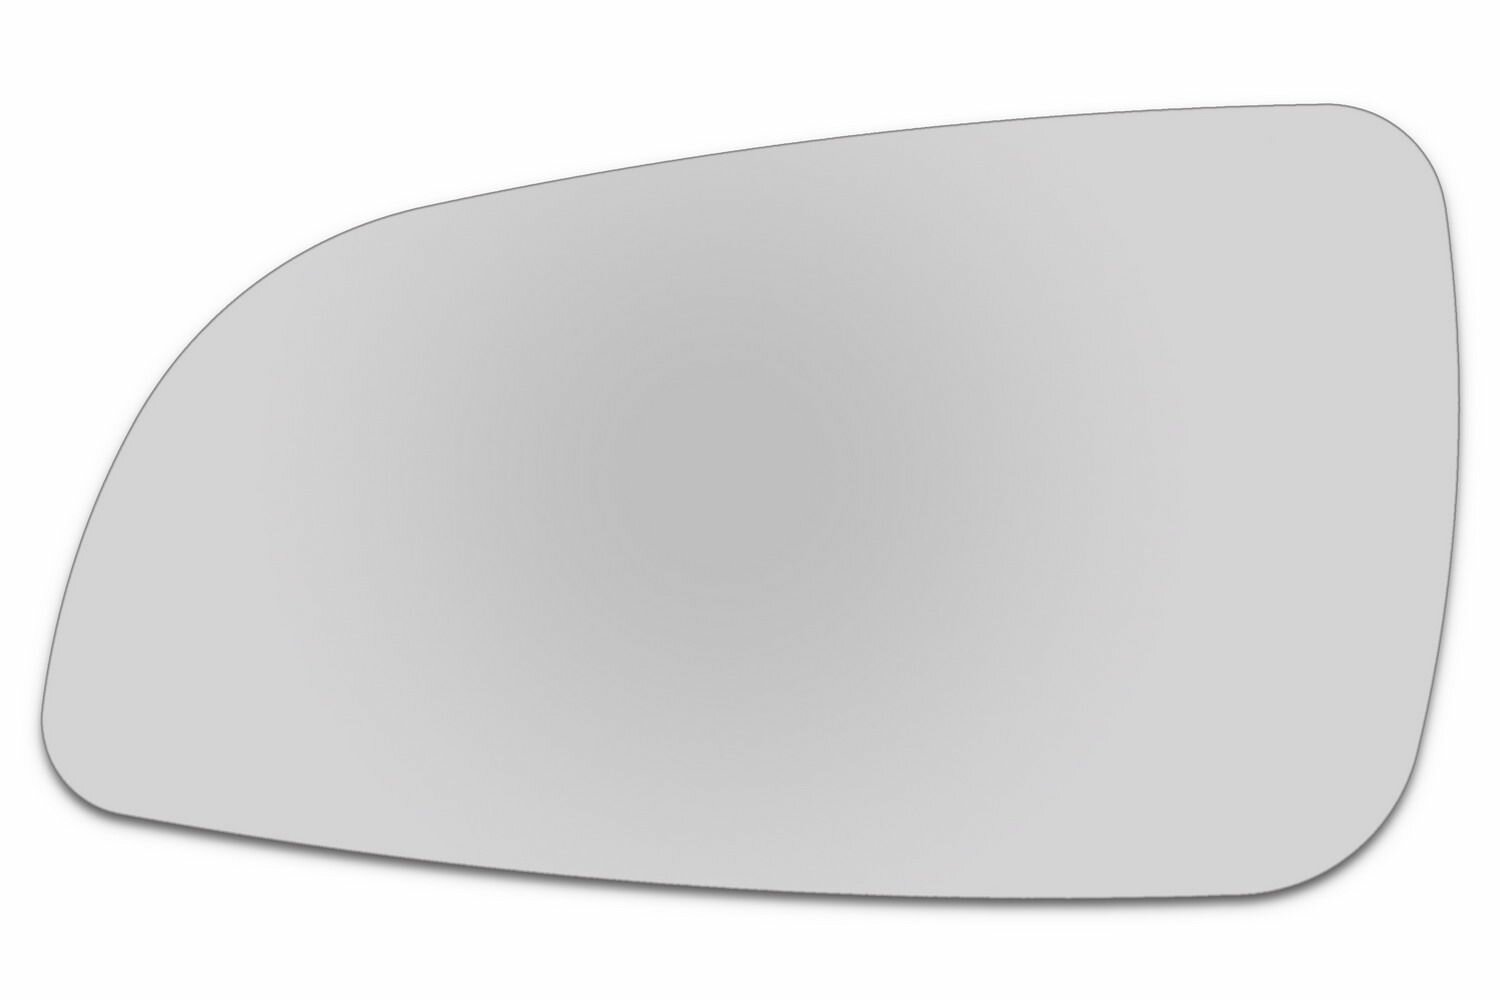 Зеркальный элемент левый OPEL Astra H (04-09) сфера нейтральный без обогрева. Размер зеркального элемента по центральной оси: высота - 96 мм, длина - 172 мм.